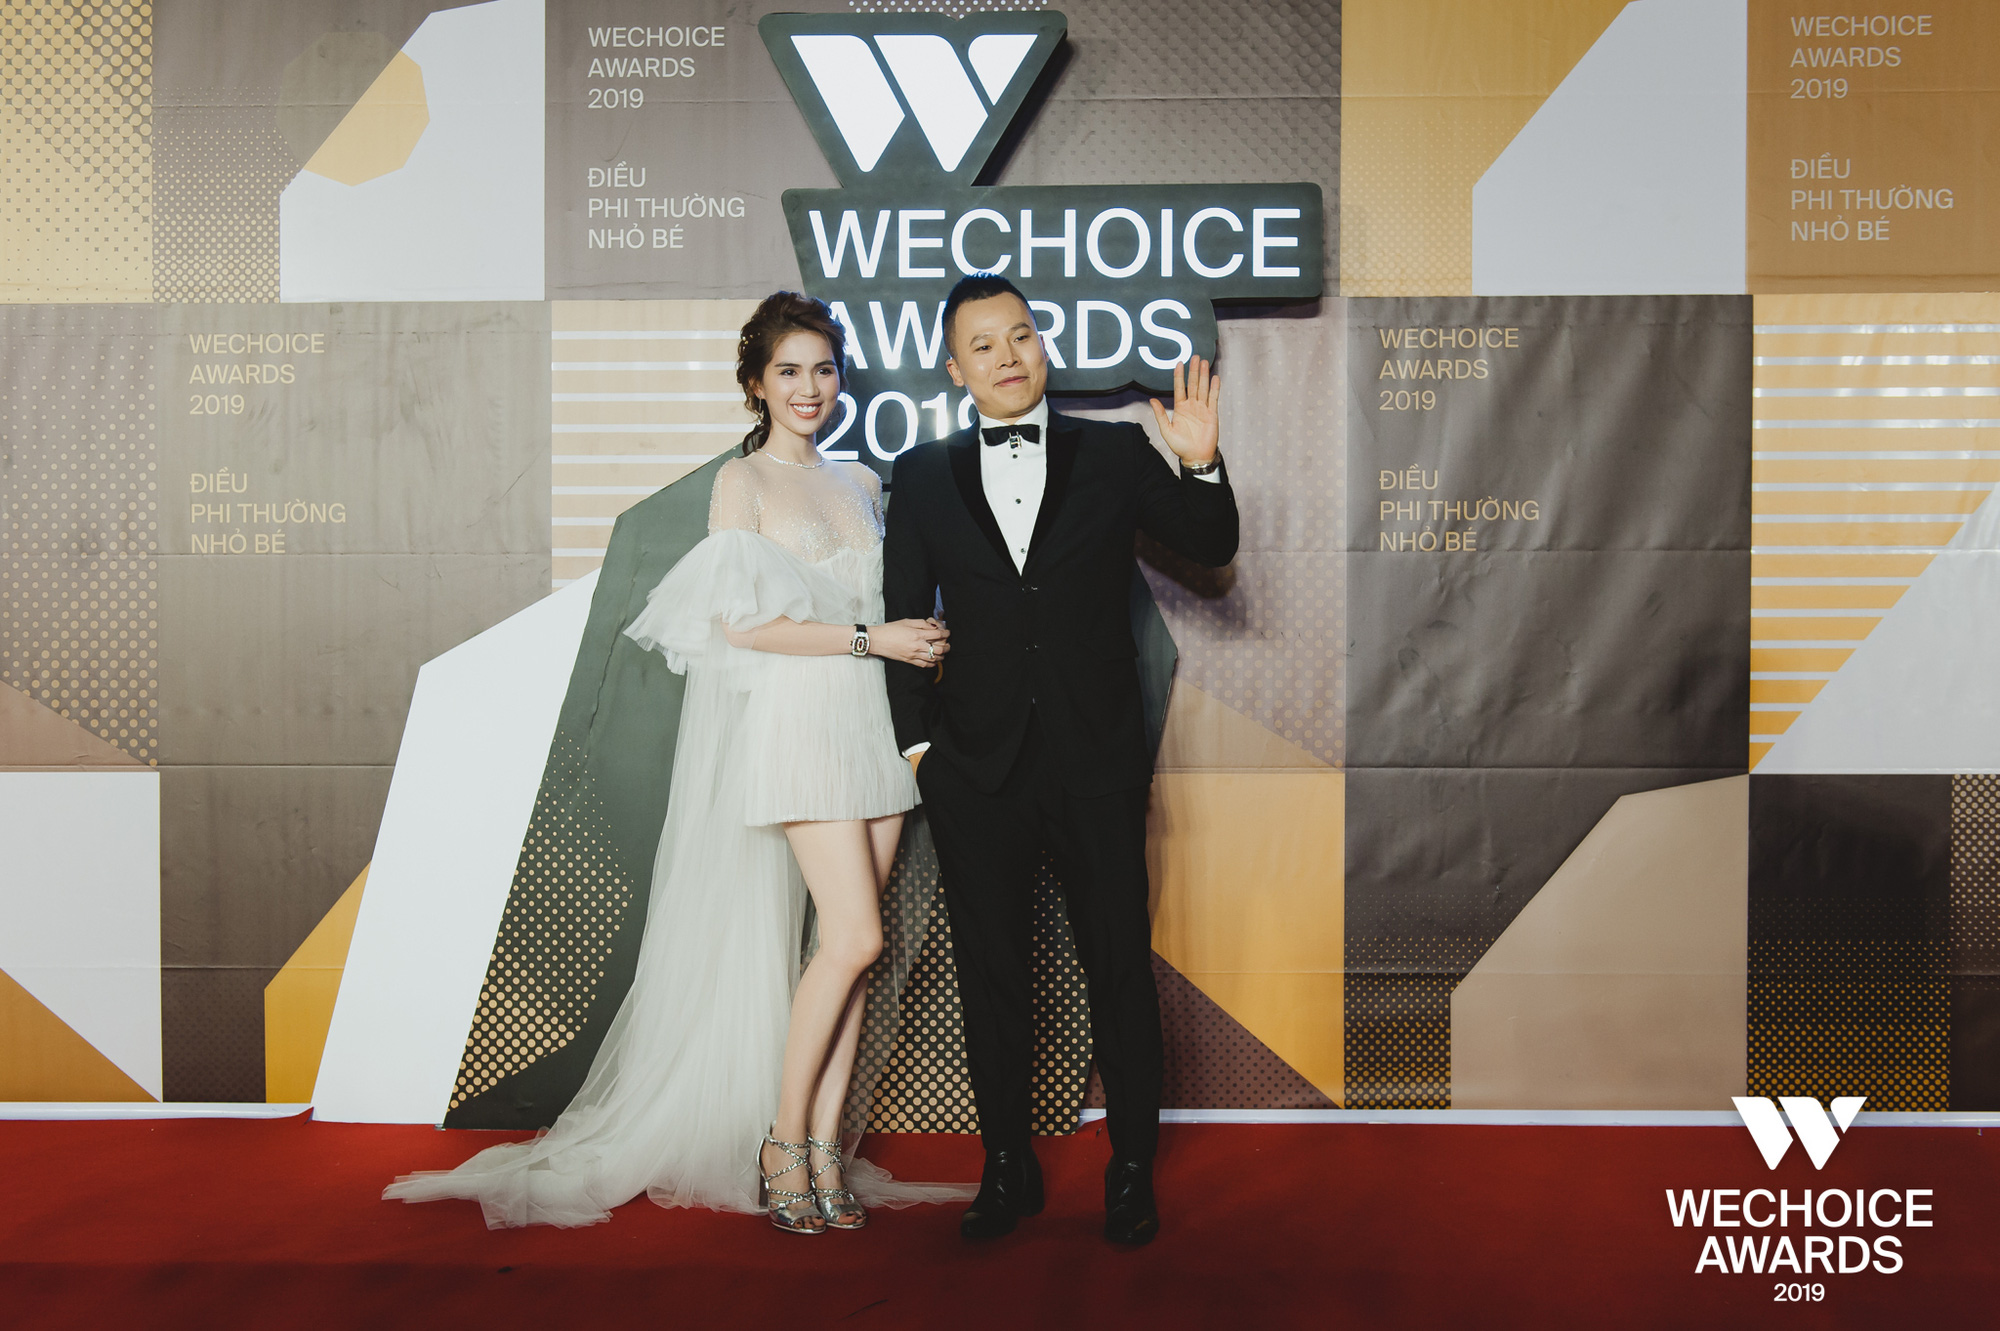 Hài hước nhất thảm đỏ WeChoice Awards 2019: Ngọc Trinh quạu với Vũ Khắc Tiệp vì bị giẫm vào đuôi váy - Ảnh 3.